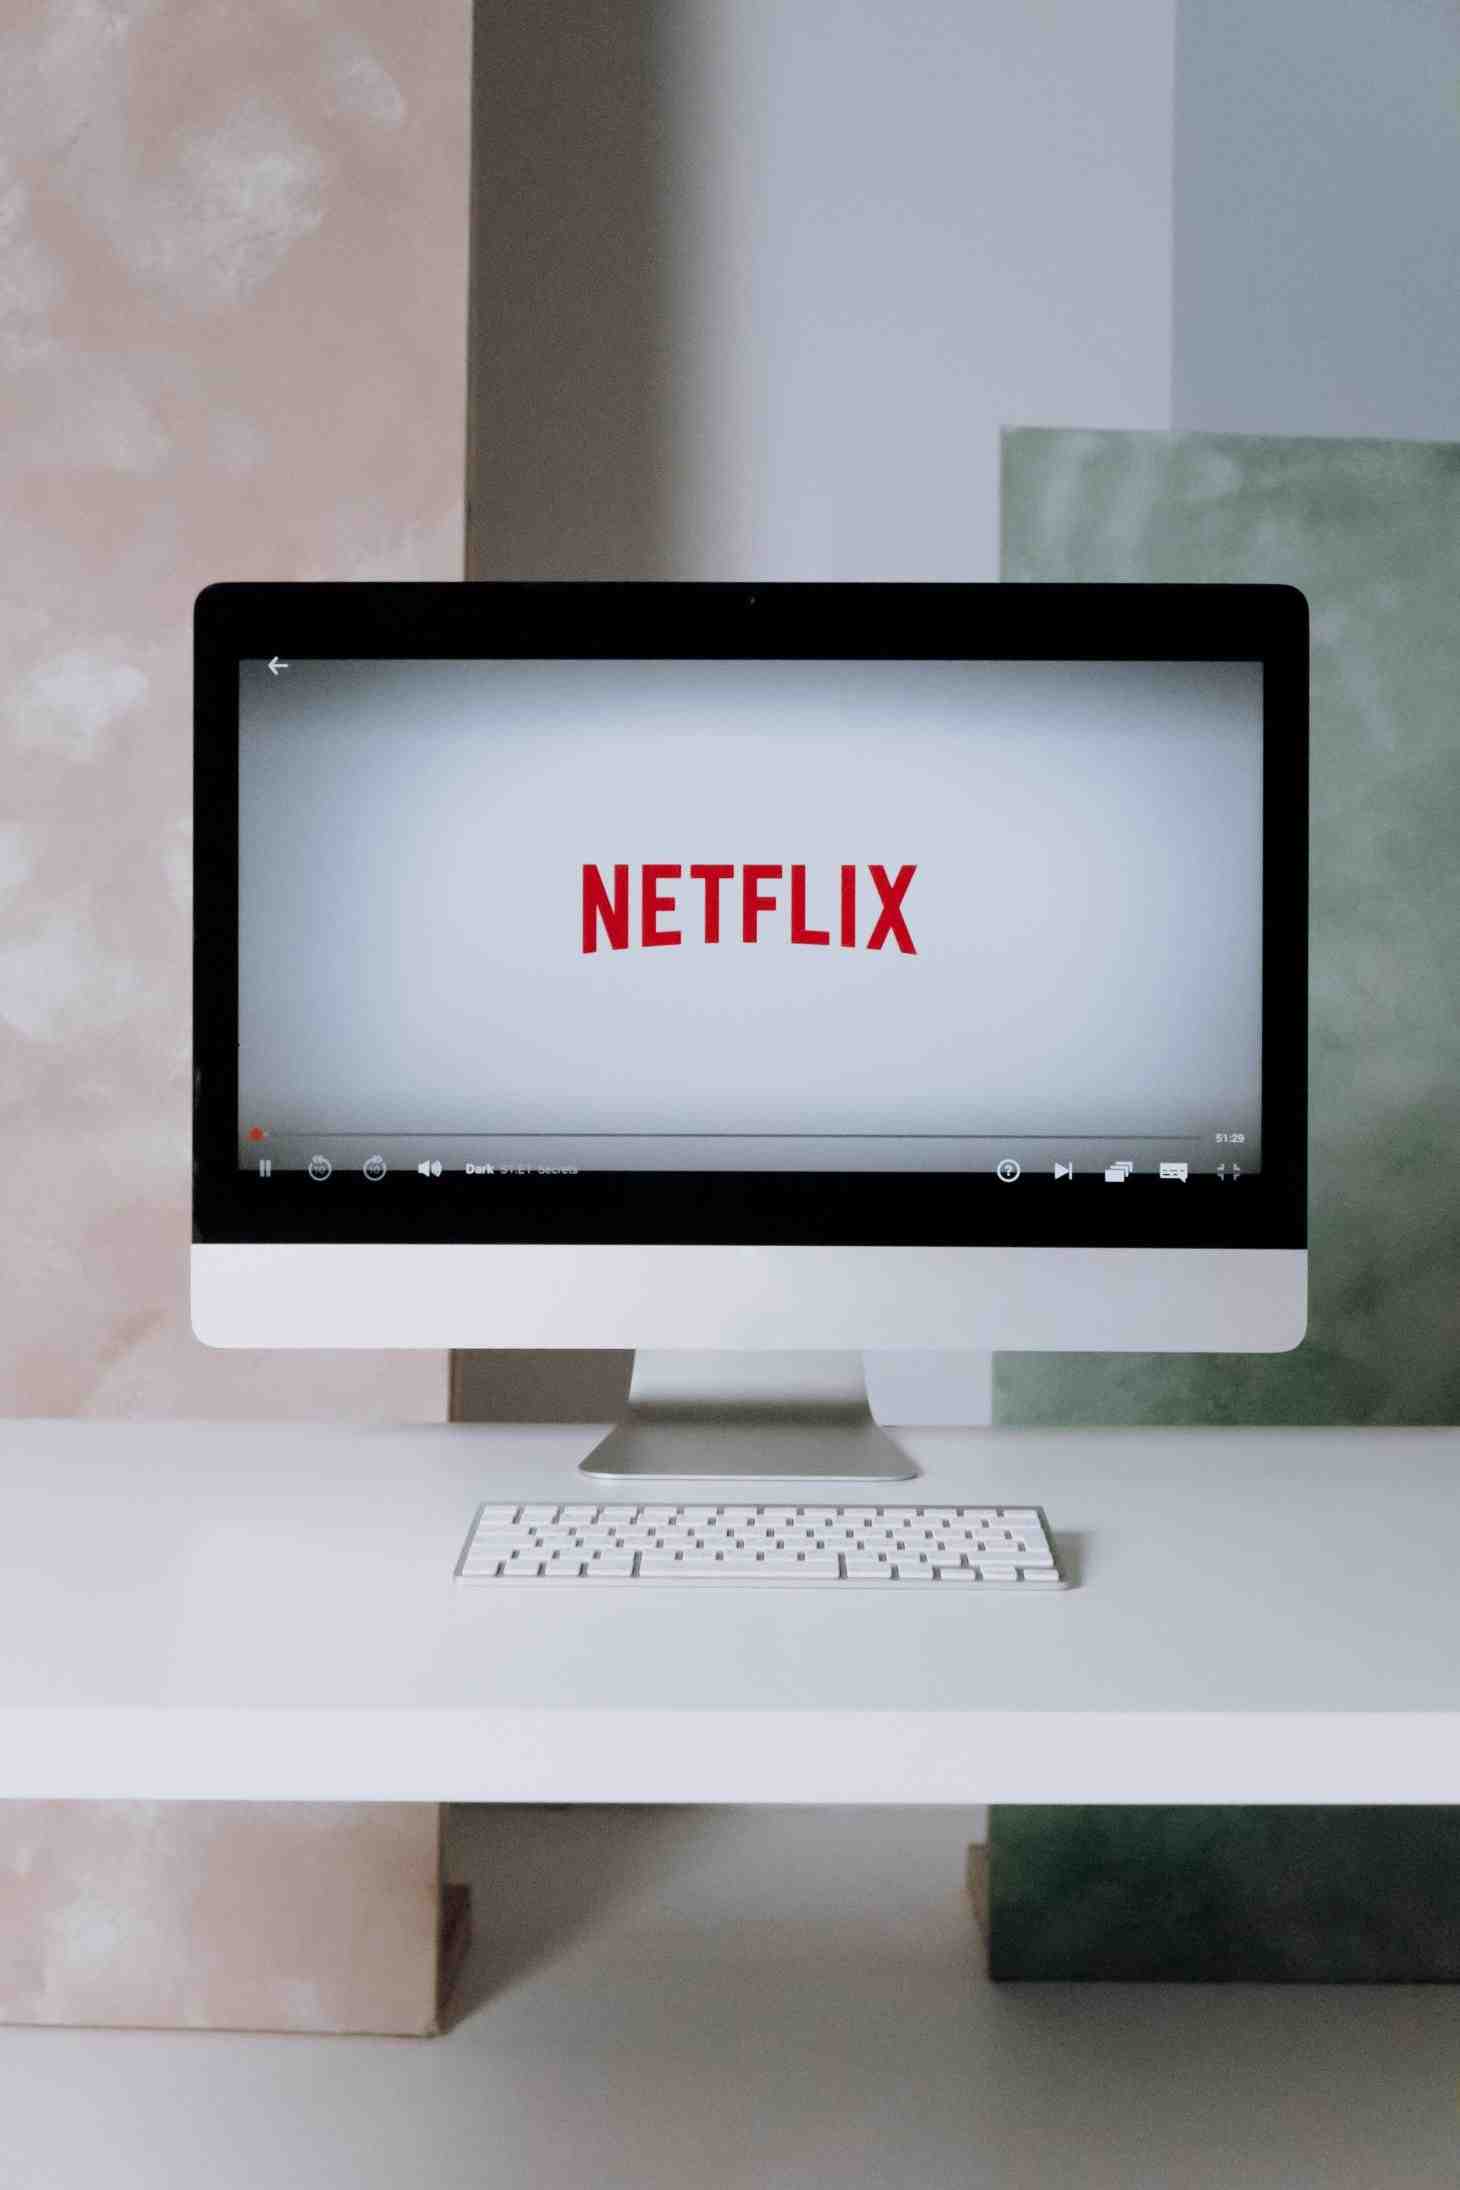 Comment avoir Netflix gratuitement sans payer ?